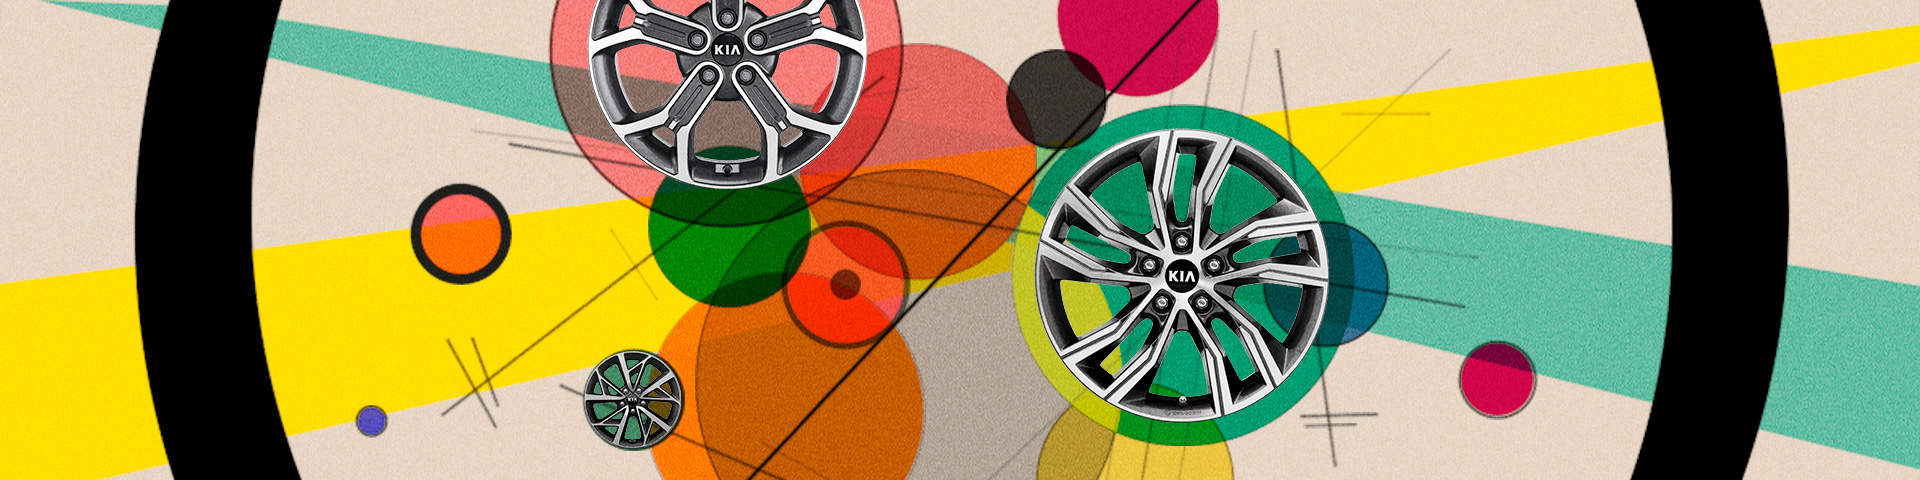 Kia Genuine Wheel and Tyres